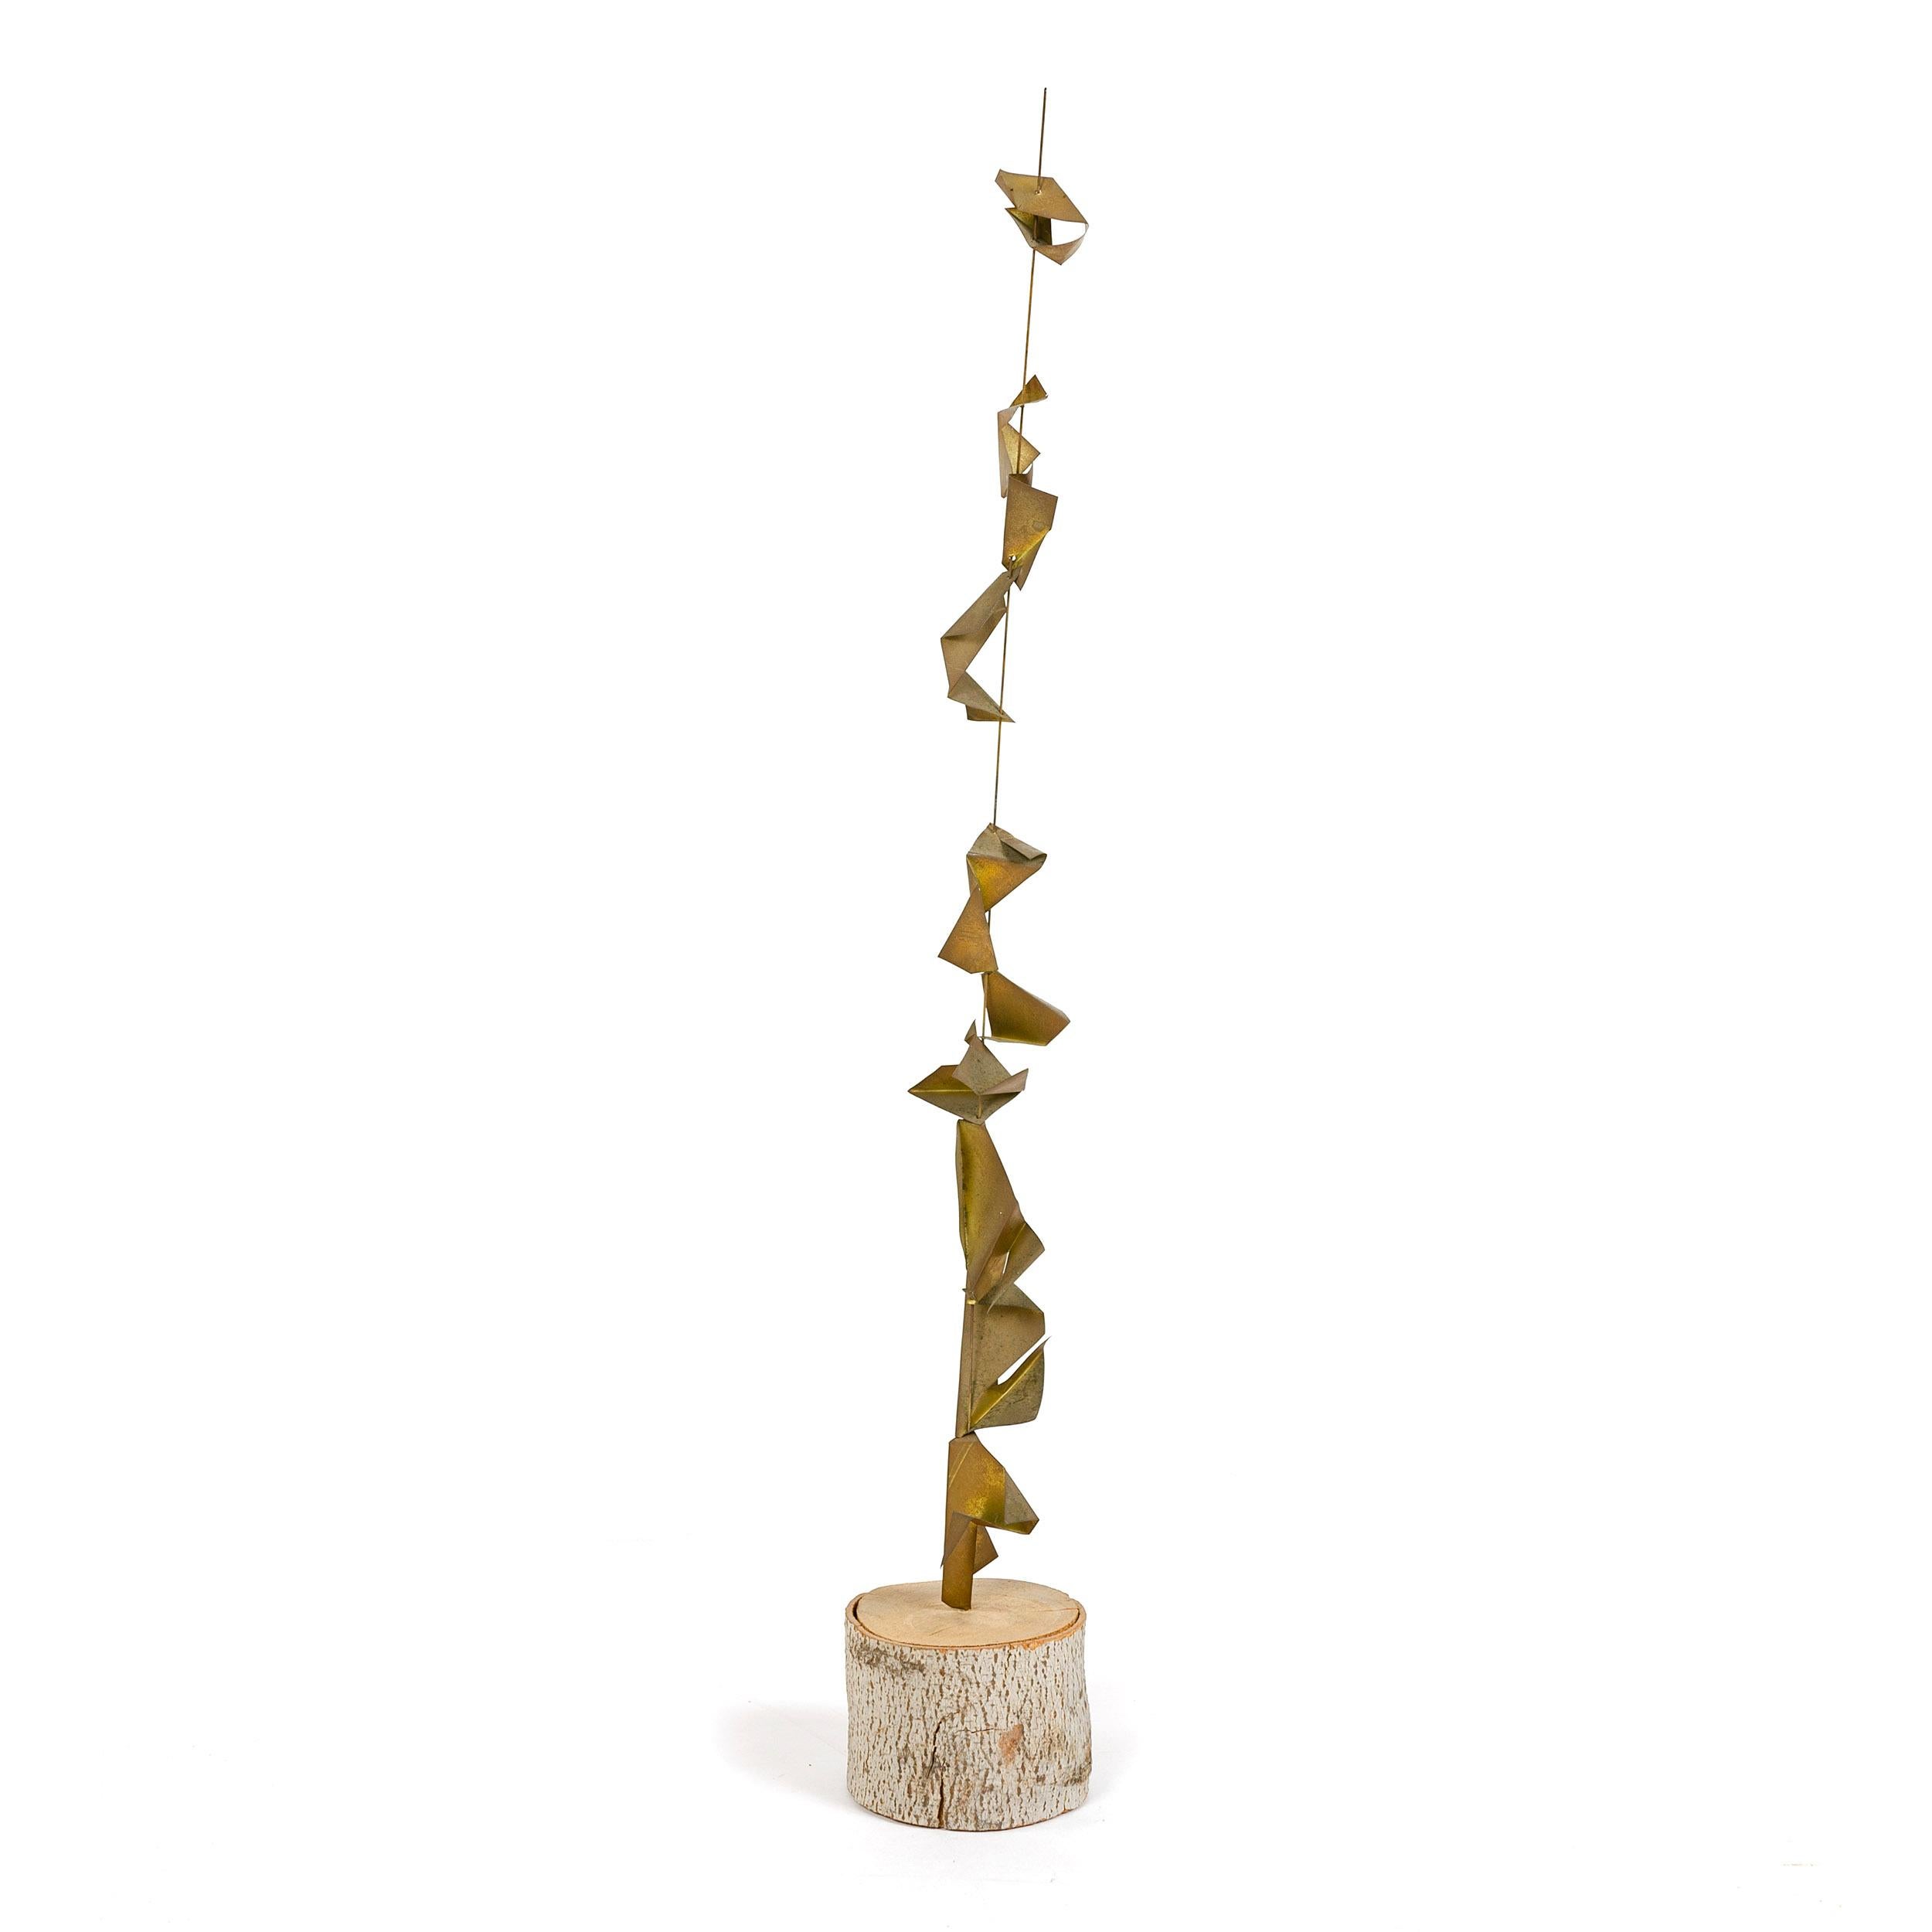 Eine Metallskulptur, bestehend aus einem dünnen, starren Draht mit gefalteten, glückskeksförmigen Stücken aus natürlich patiniertem Messing, die auf den Stab gesteckt und vertikal gestapelt werden. Der Stab ist in eine runde, trommelförmige Platte